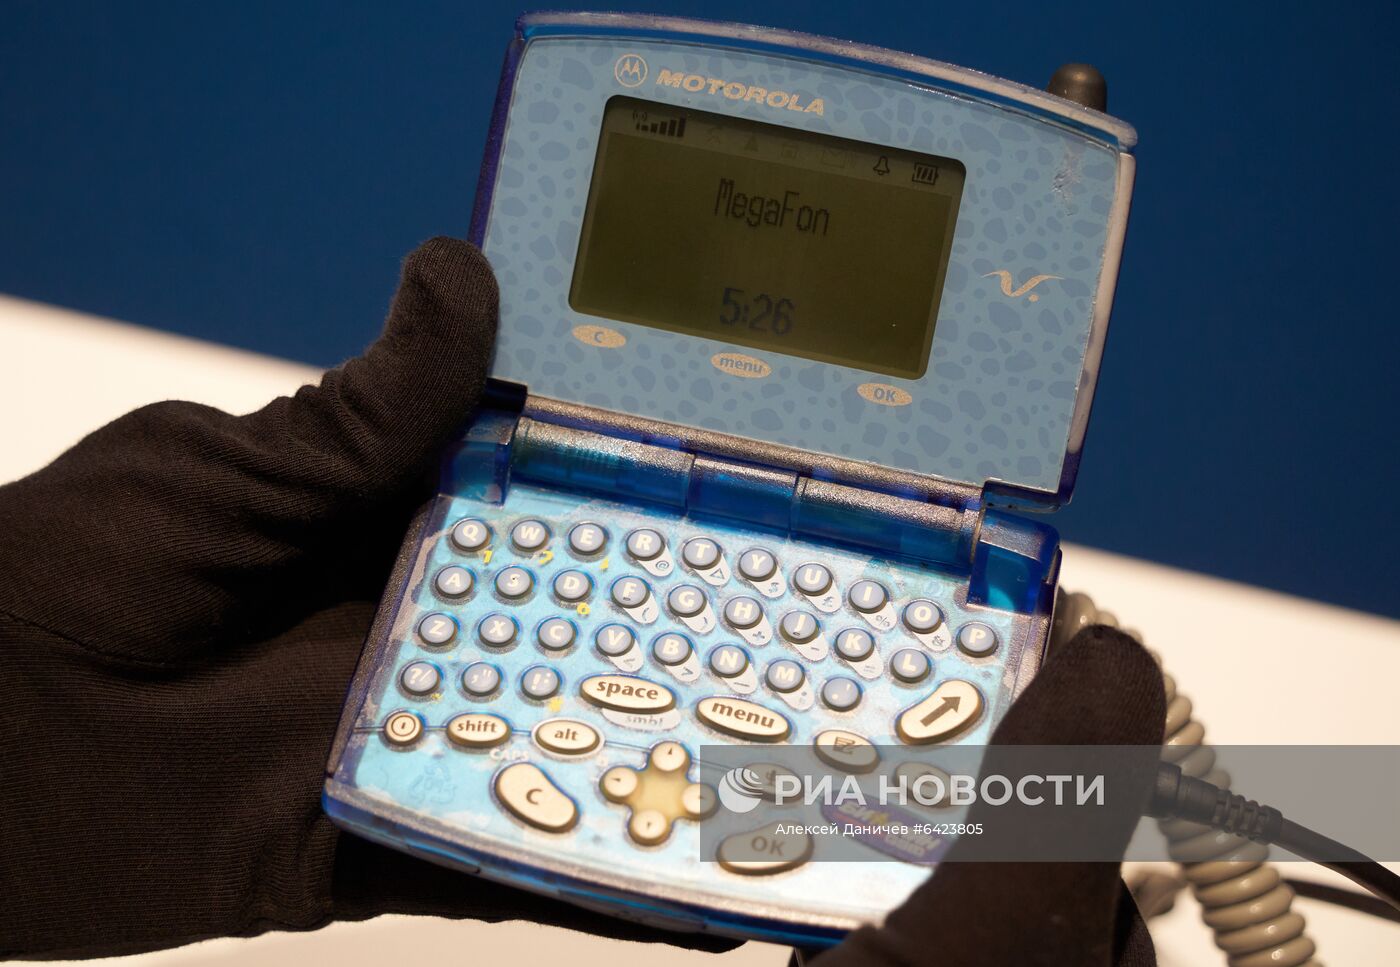 Выставка ретро-мобильных телефонов "Яндекс.Маркет"